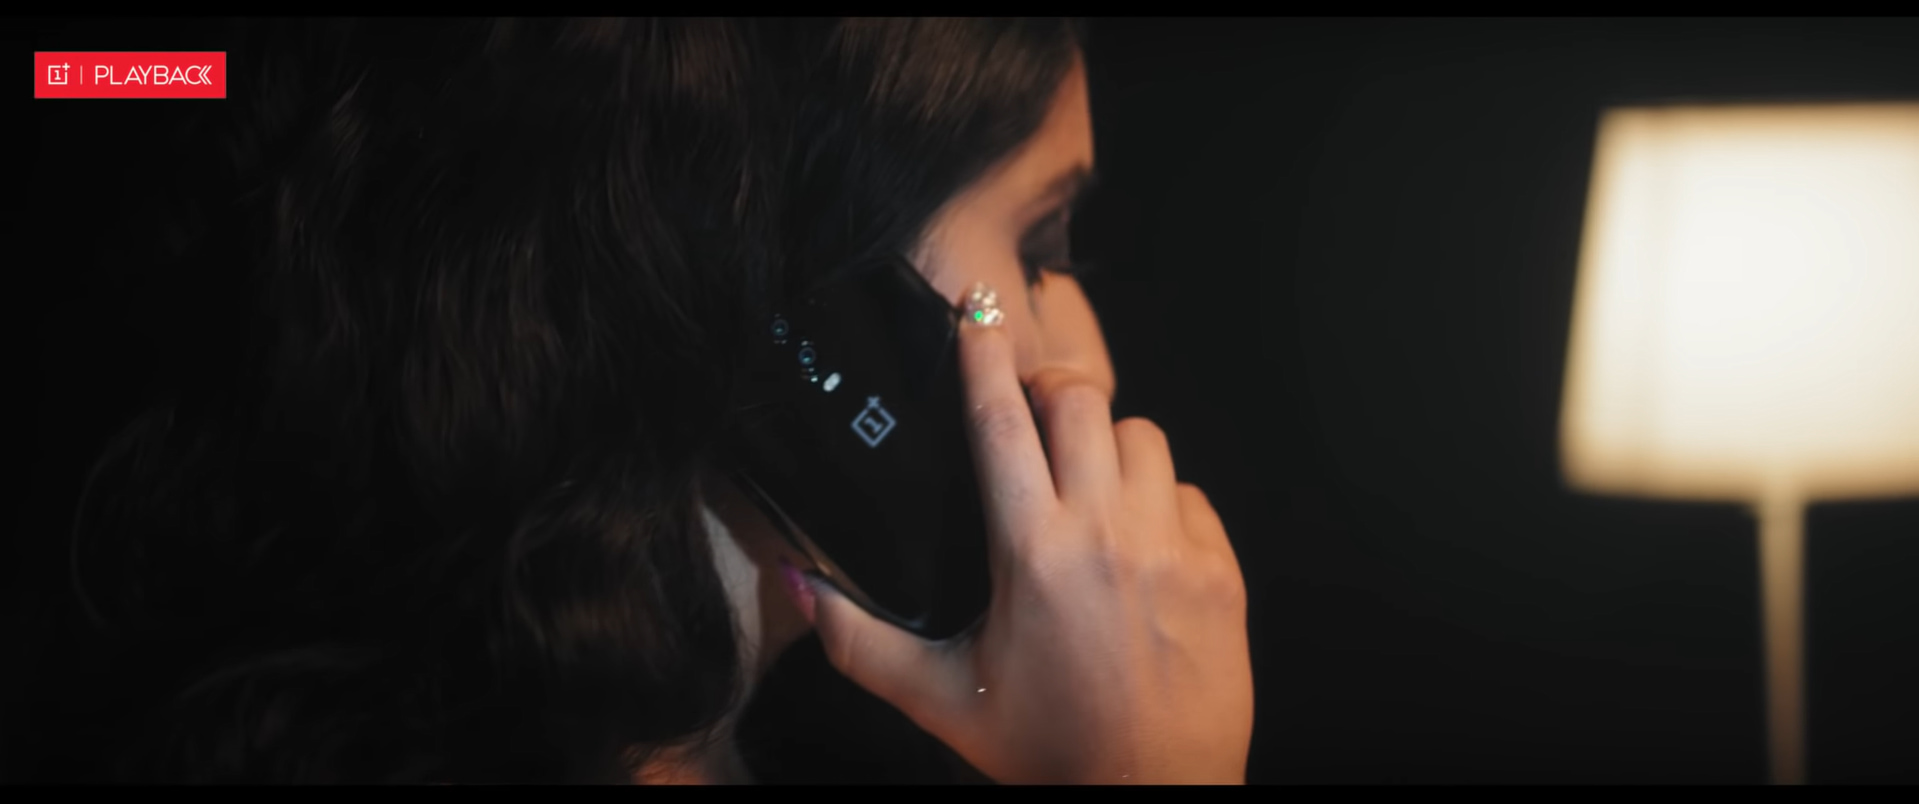 Un video musicale svela il design di OnePlus 7 thumbnail